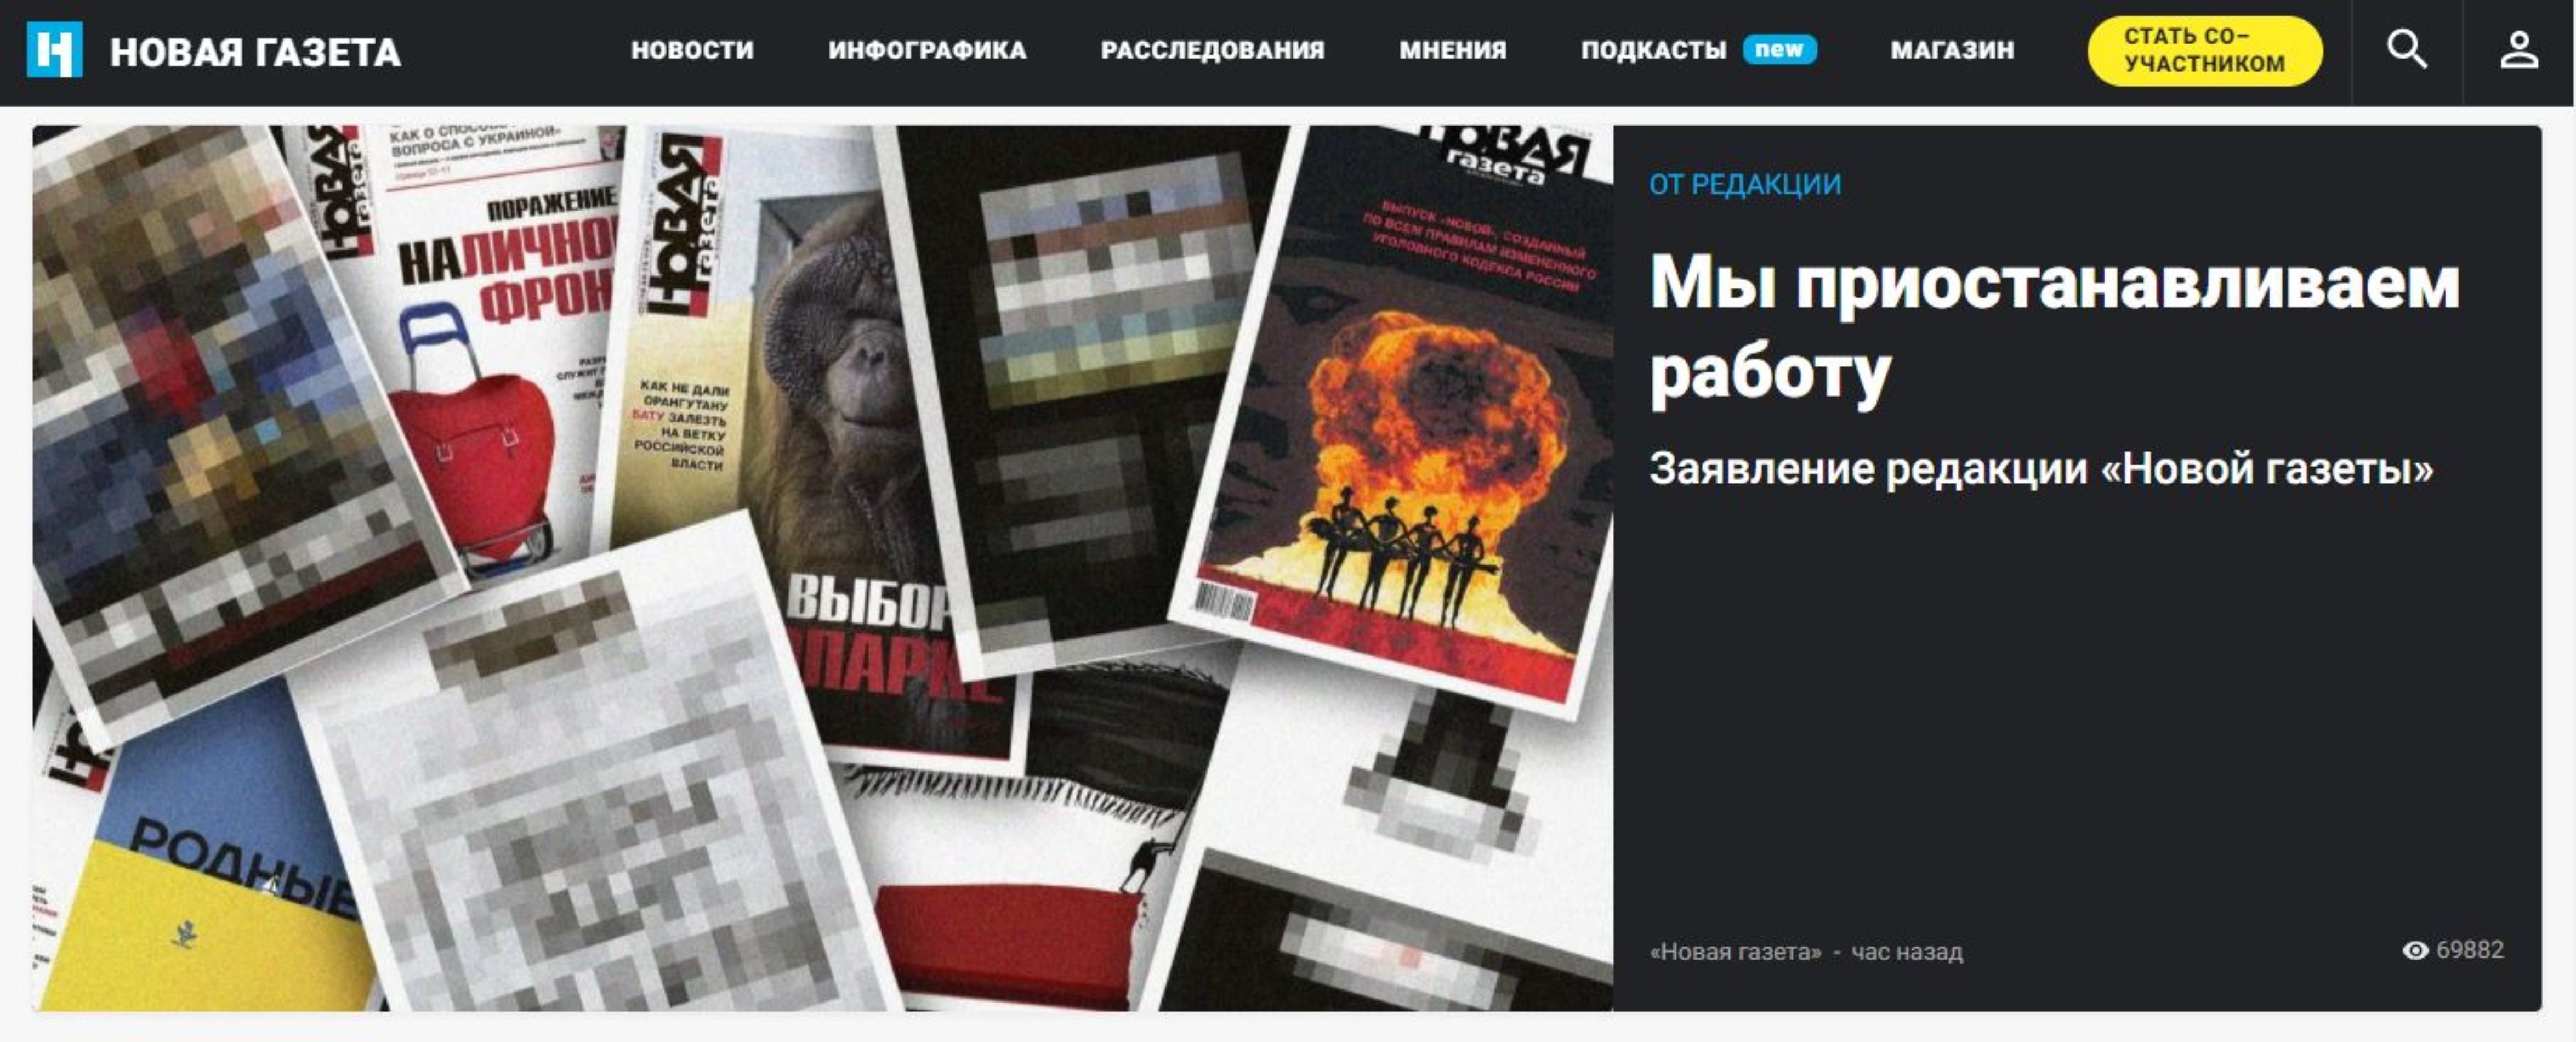 Cierra el 'Novaya Gazeta', el último diario independiente de Rusia   Captura de pantalla